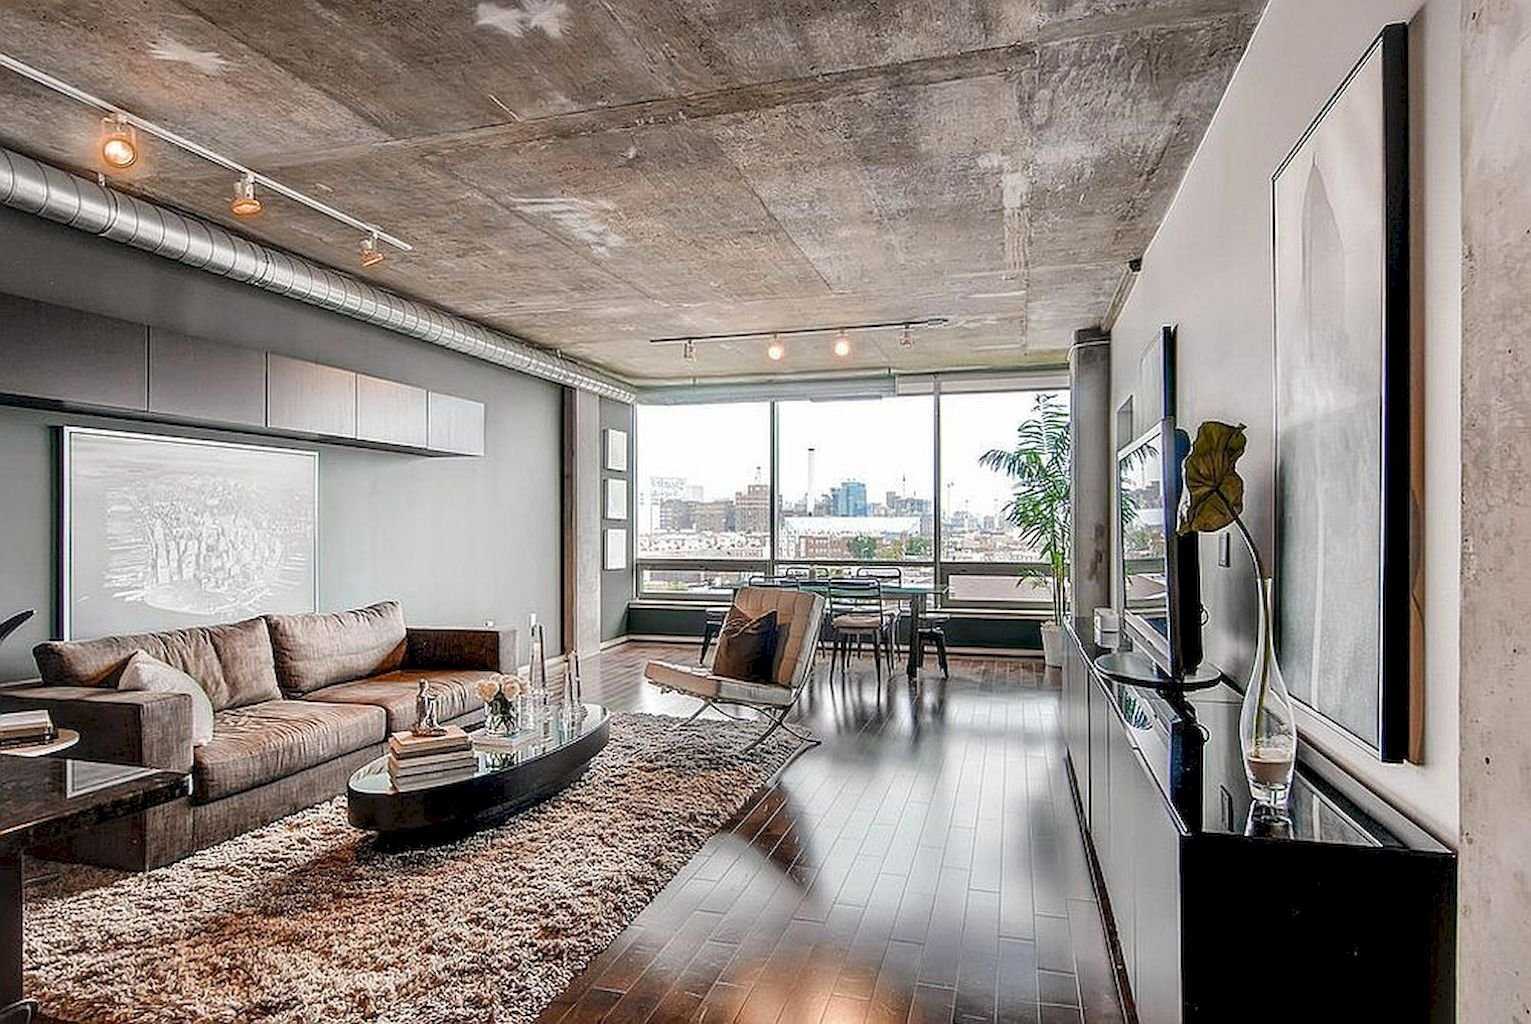 Бетонный потолок в стиле лофт (100+ фото в интерьере)